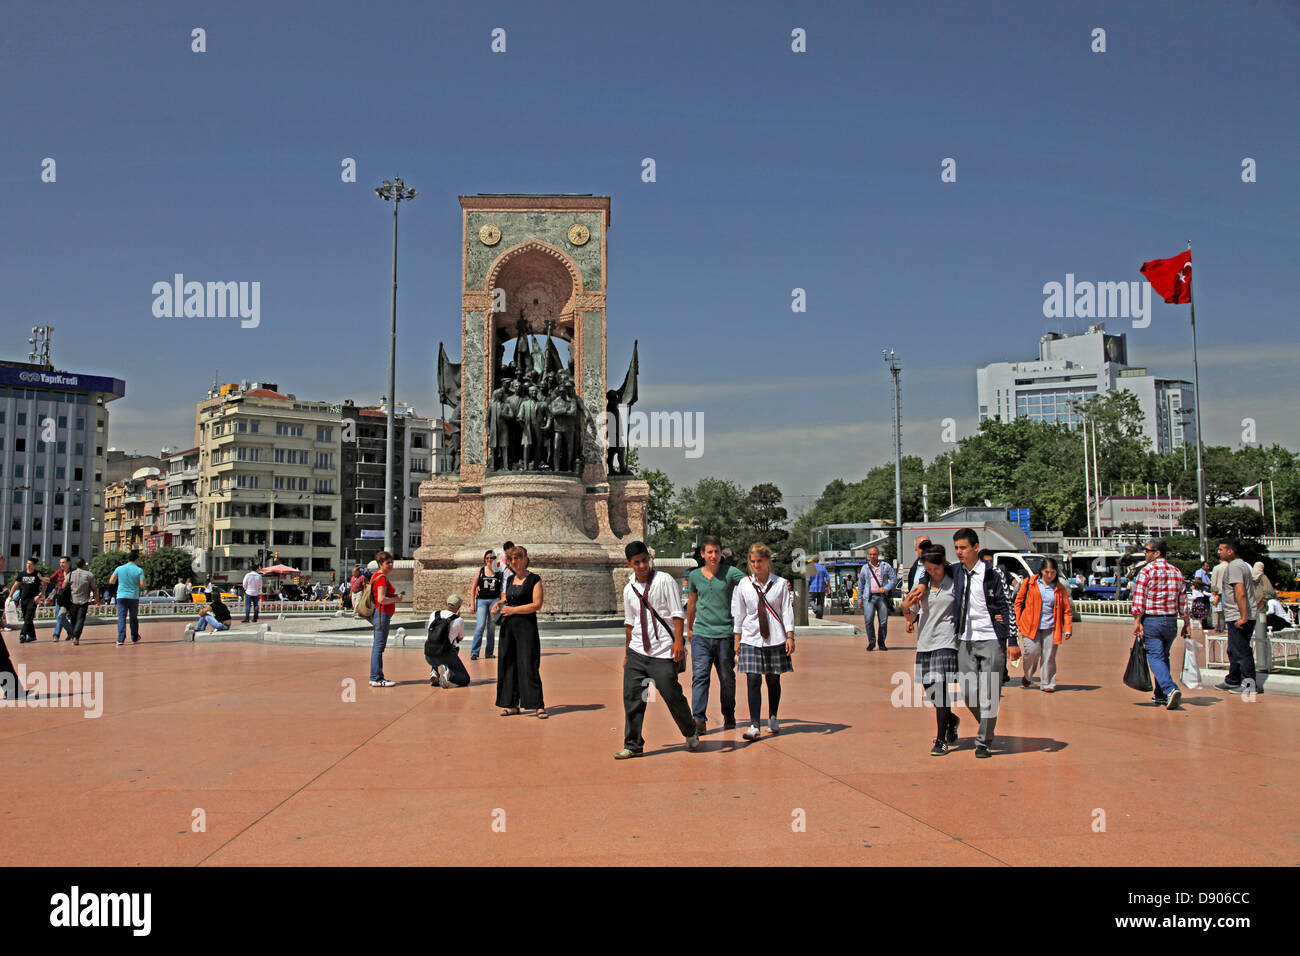 MONUMENT DE LA RÉPUBLIQUE la place Taksim Istanbul et la Turquie, 22 mai 2012 Banque D'Images